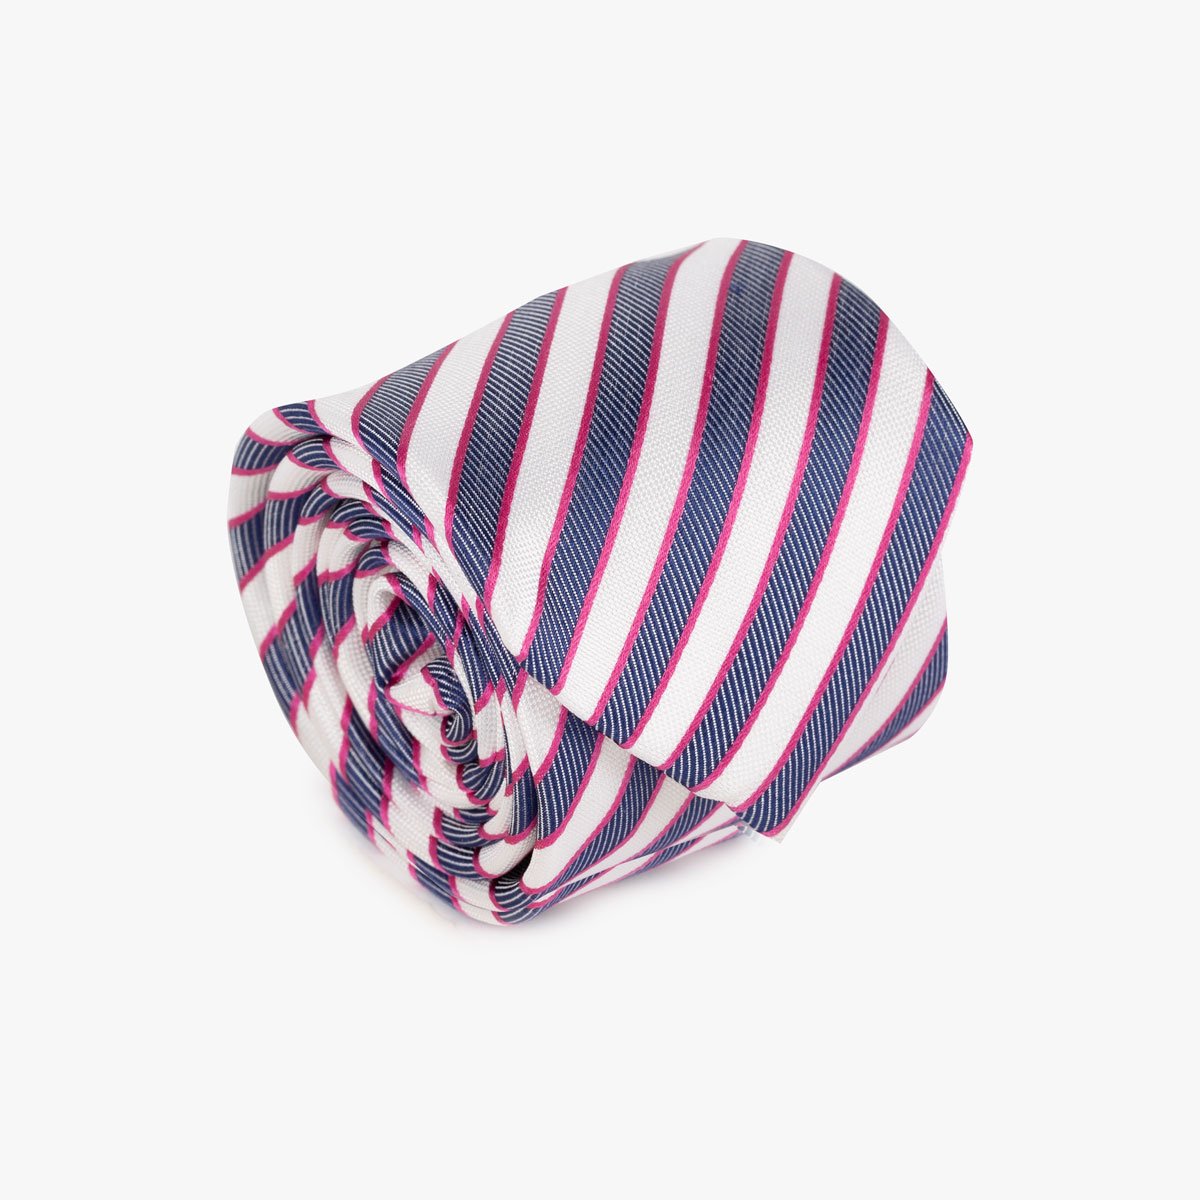 Krawatte mit Streifen in blau weiß pink